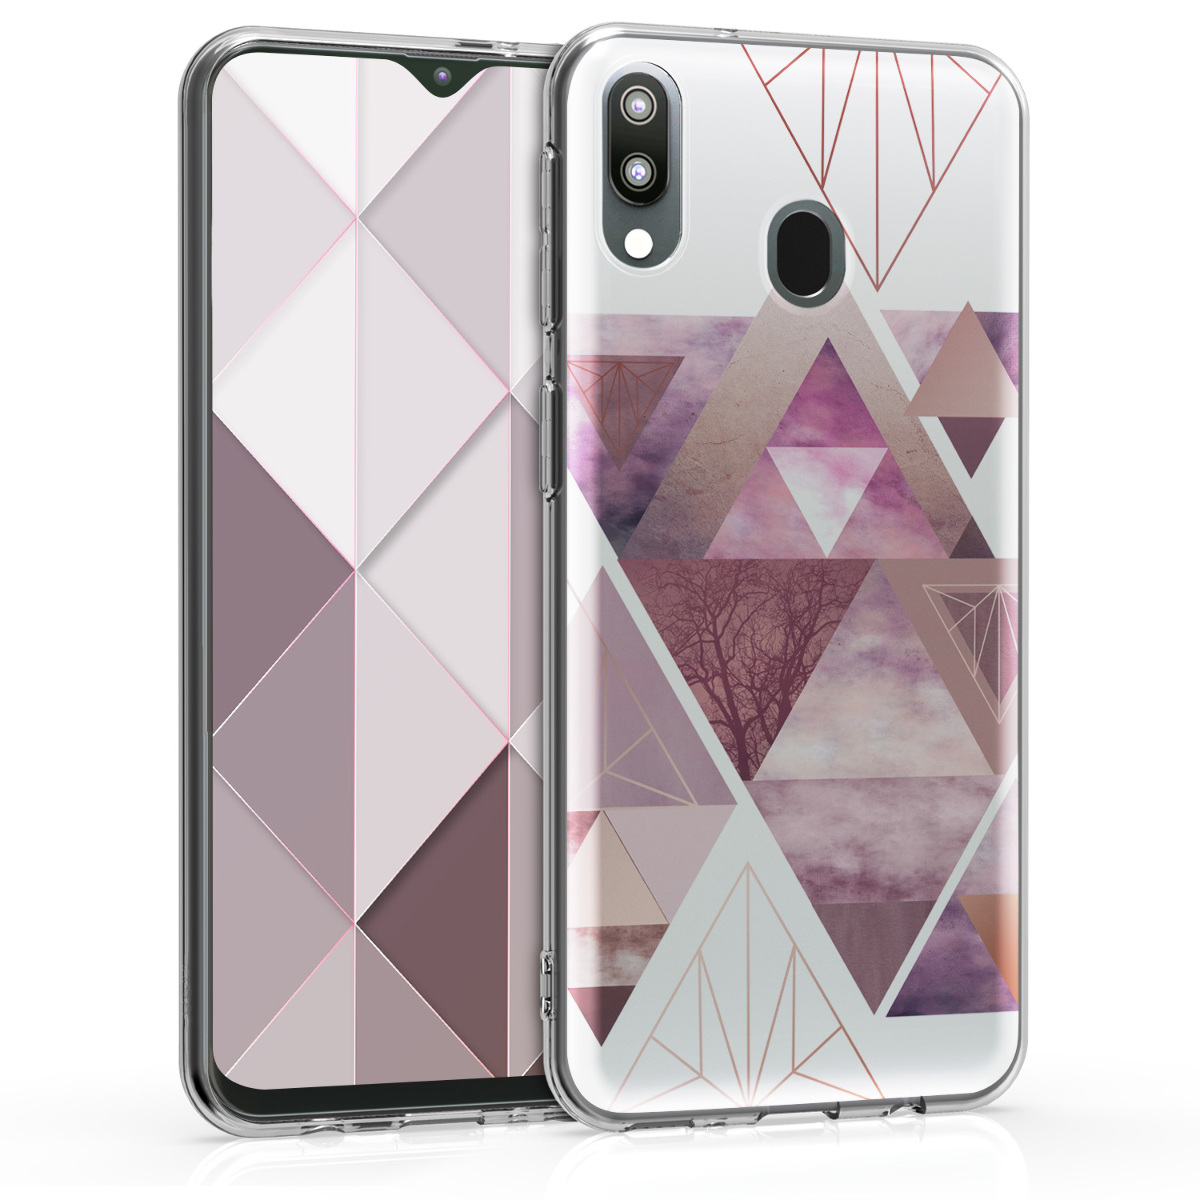 Kvalitní silikonové TPU pouzdro pro Samsung M20 (2019) - Patchwork trojúhelníky světle růžové / starorůžové rosegold / bílé